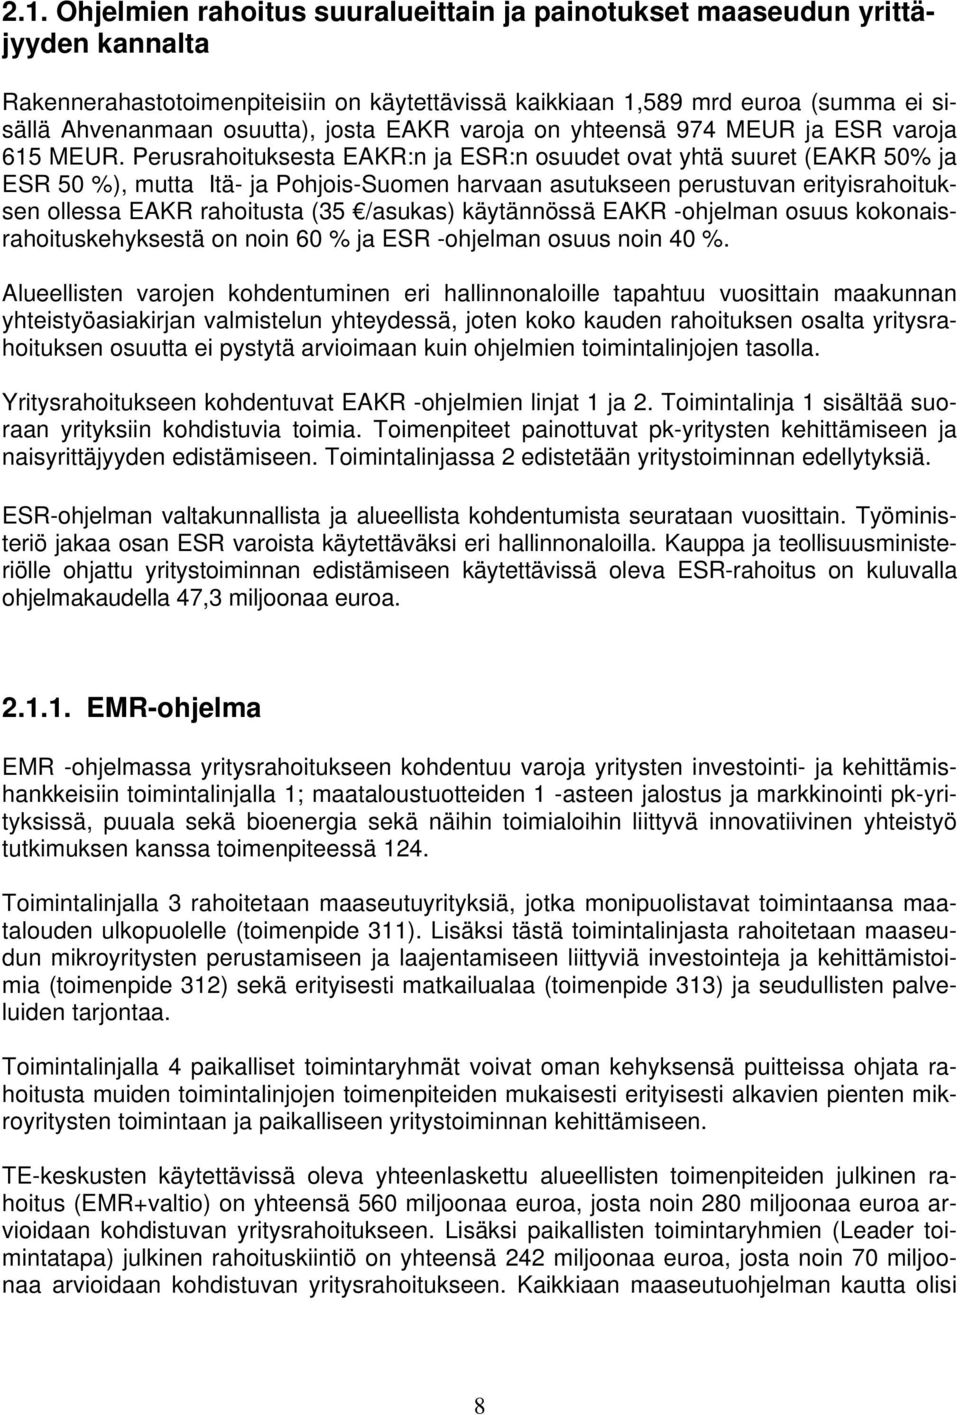 Perusrahoituksesta EAKR:n ja ESR:n osuudet ovat yhtä suuret (EAKR 50% ja ESR 50 %), mutta Itä- ja Pohjois-Suomen harvaan asutukseen perustuvan erityisrahoituksen ollessa EAKR rahoitusta (35 /asukas)